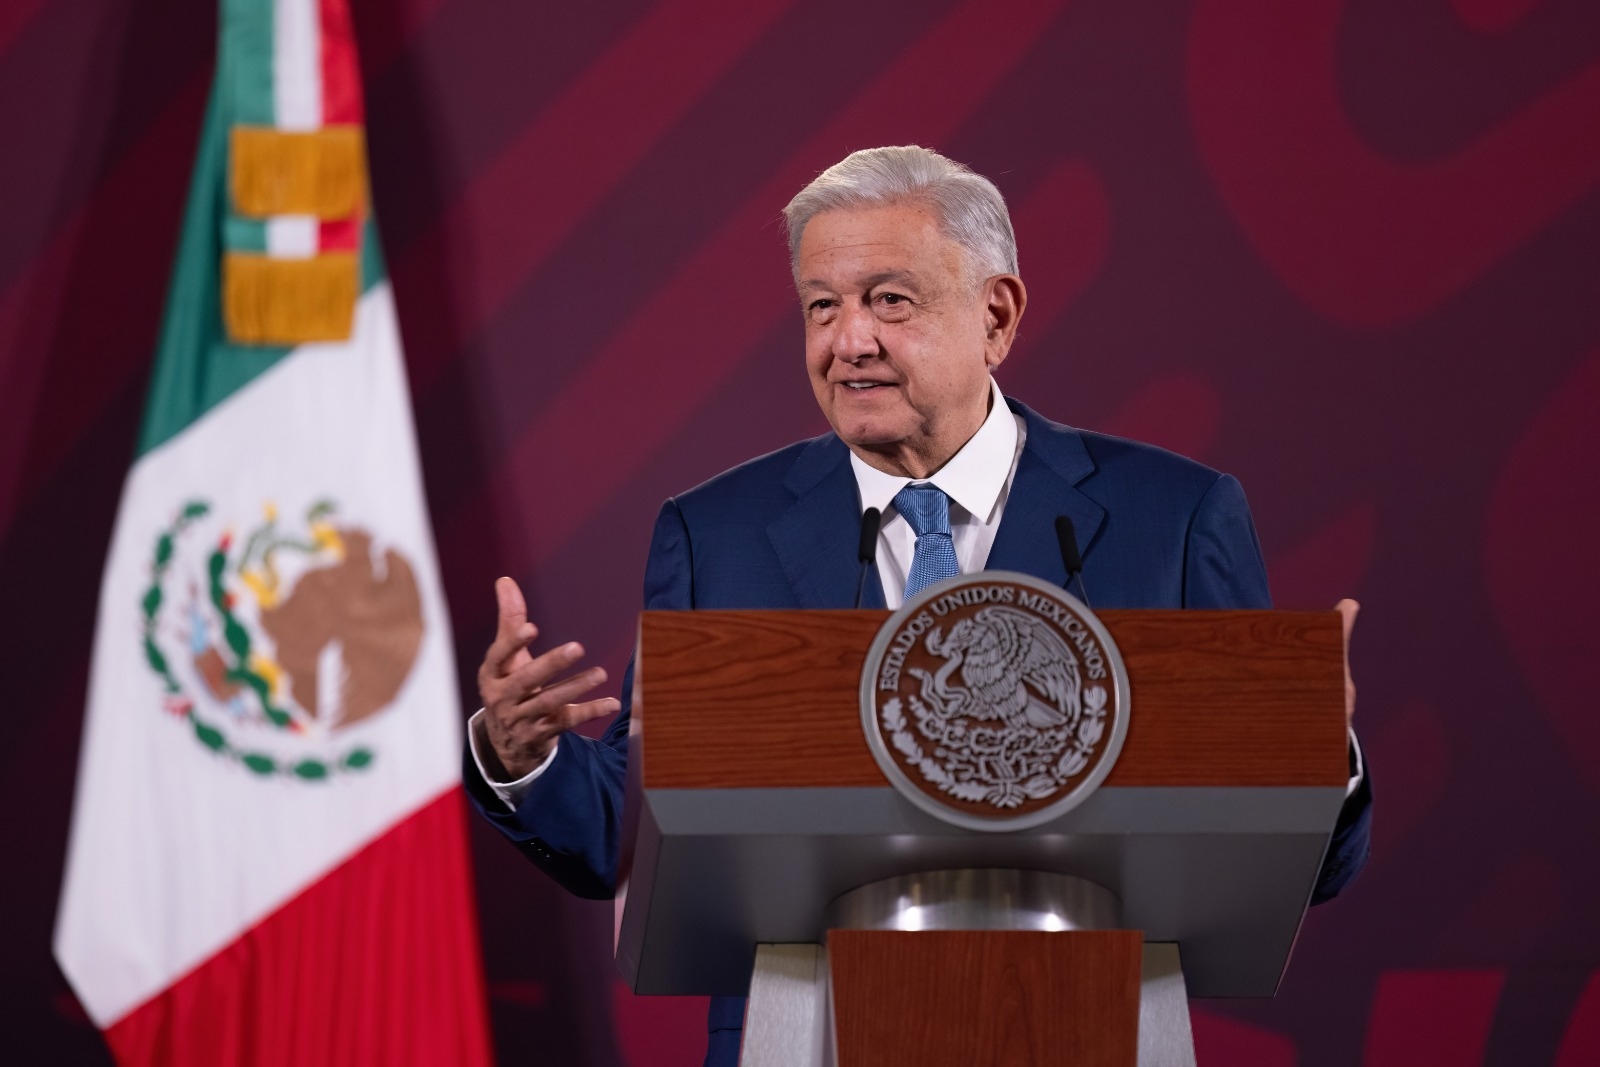 El presidente Andrés Manuel López Obrador, señaló que esta a favor de promover el diálogo bilateral entre Estados Unidos y Cuba